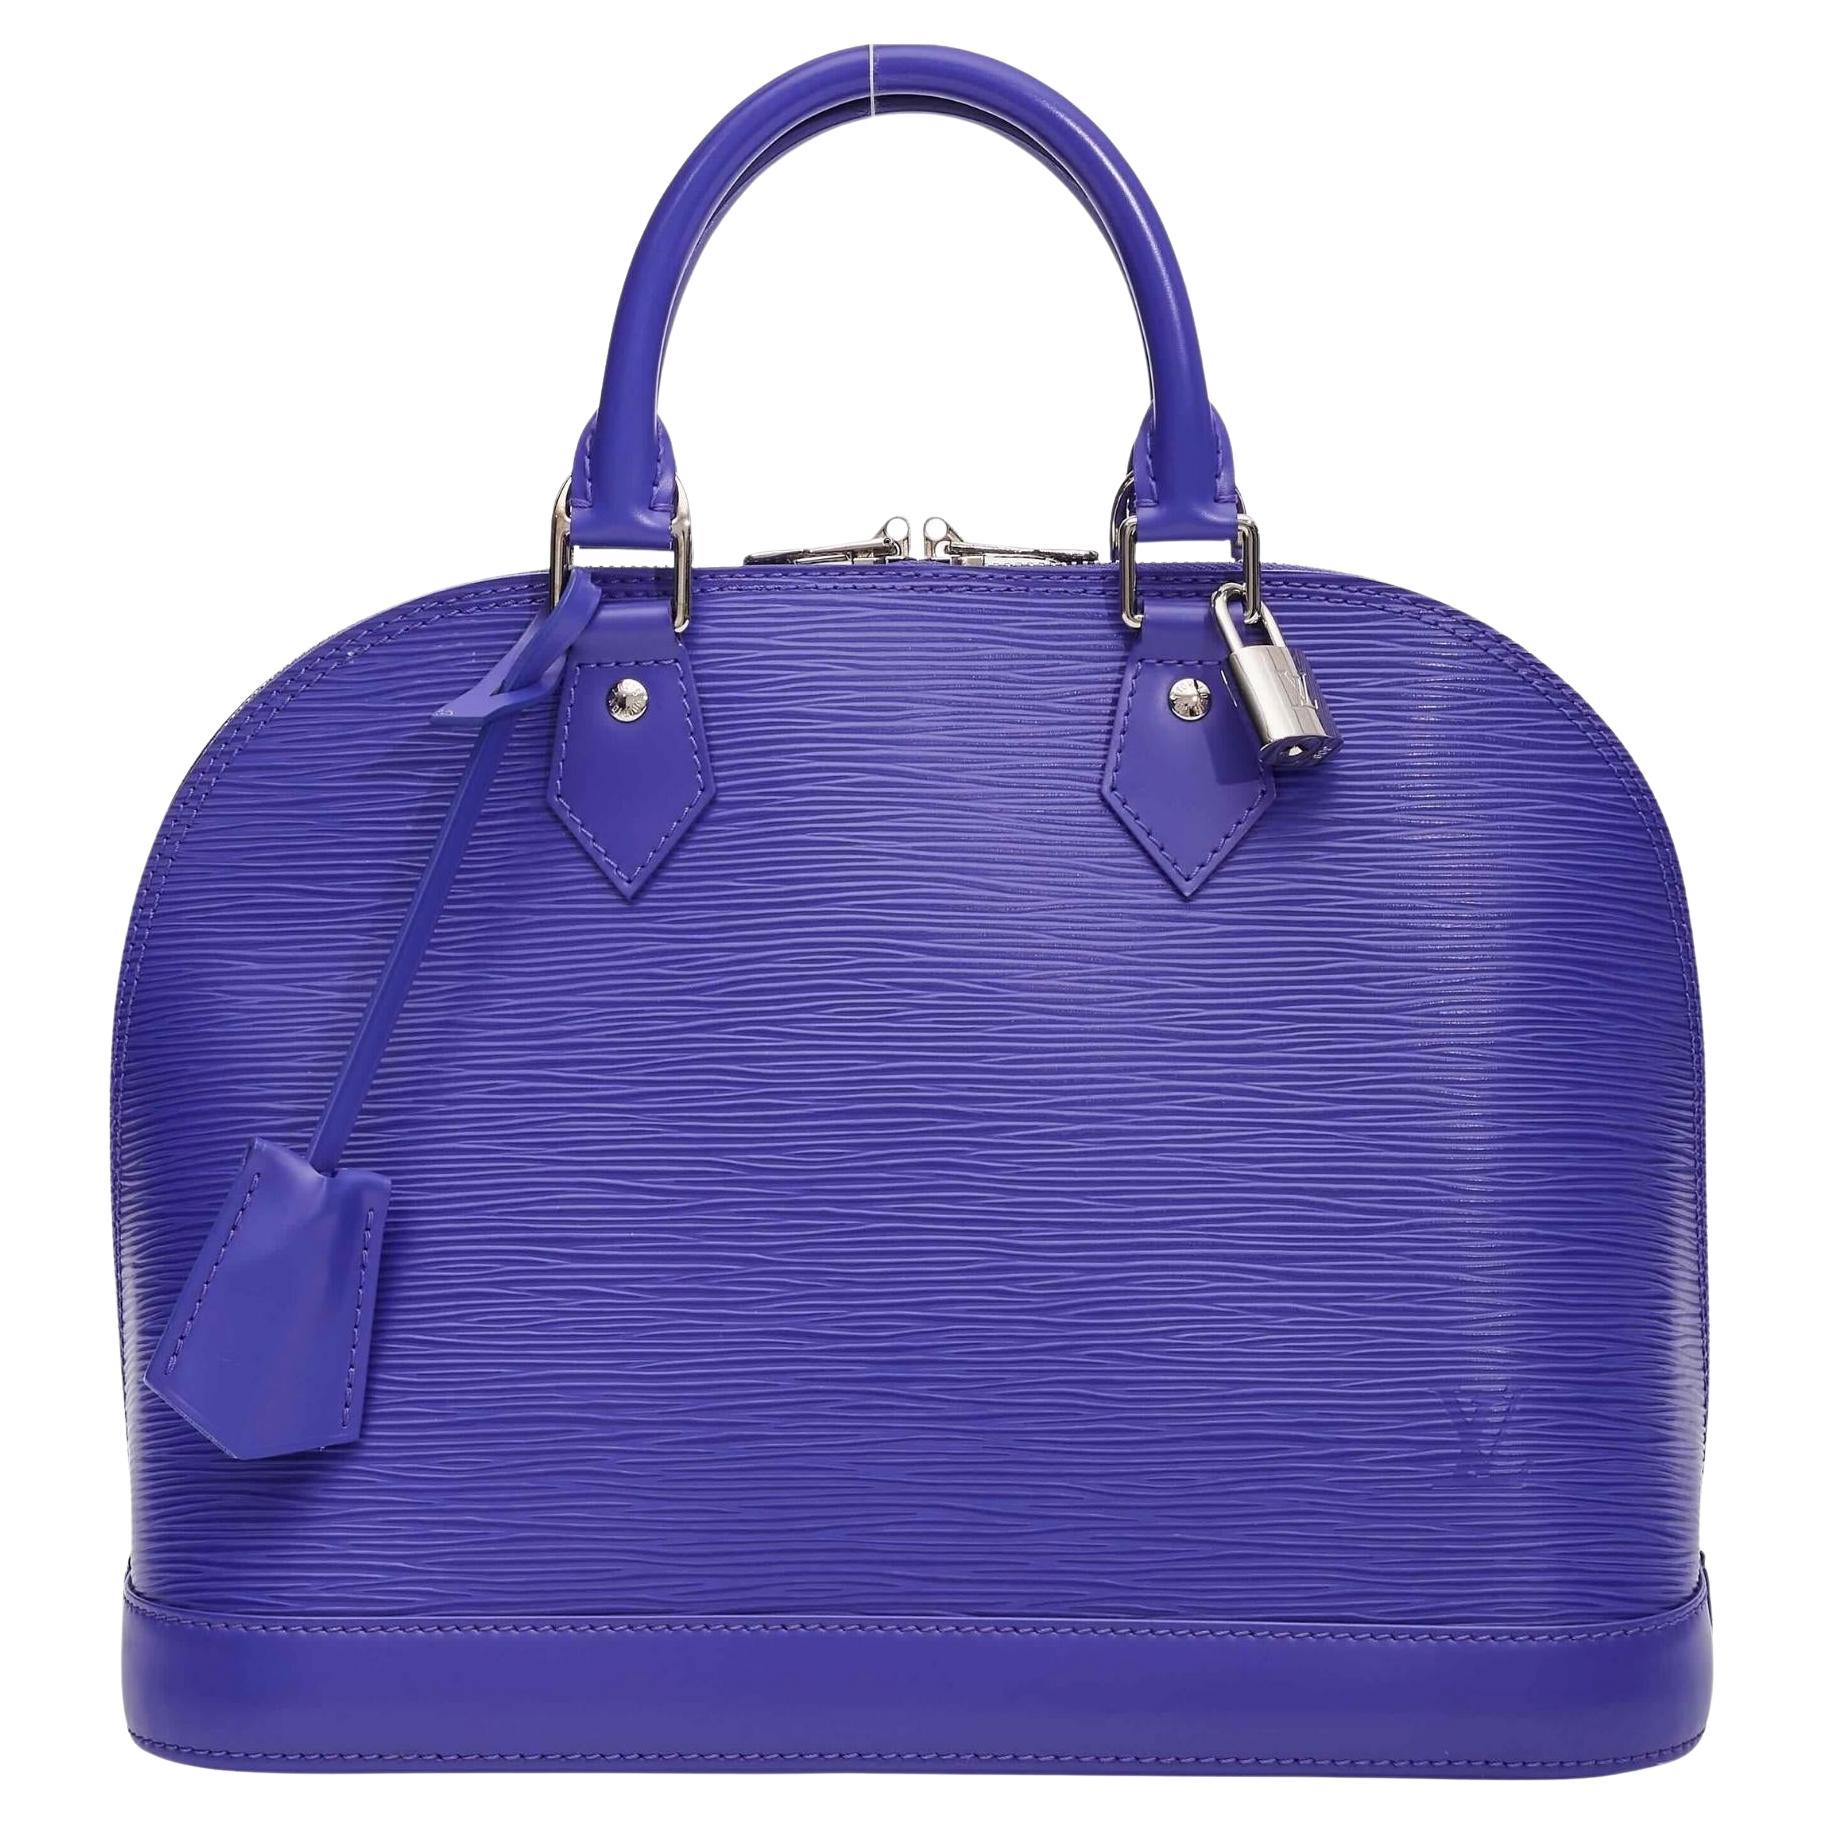 Sac Alma PM Louis Vuitton en cuir épi violet